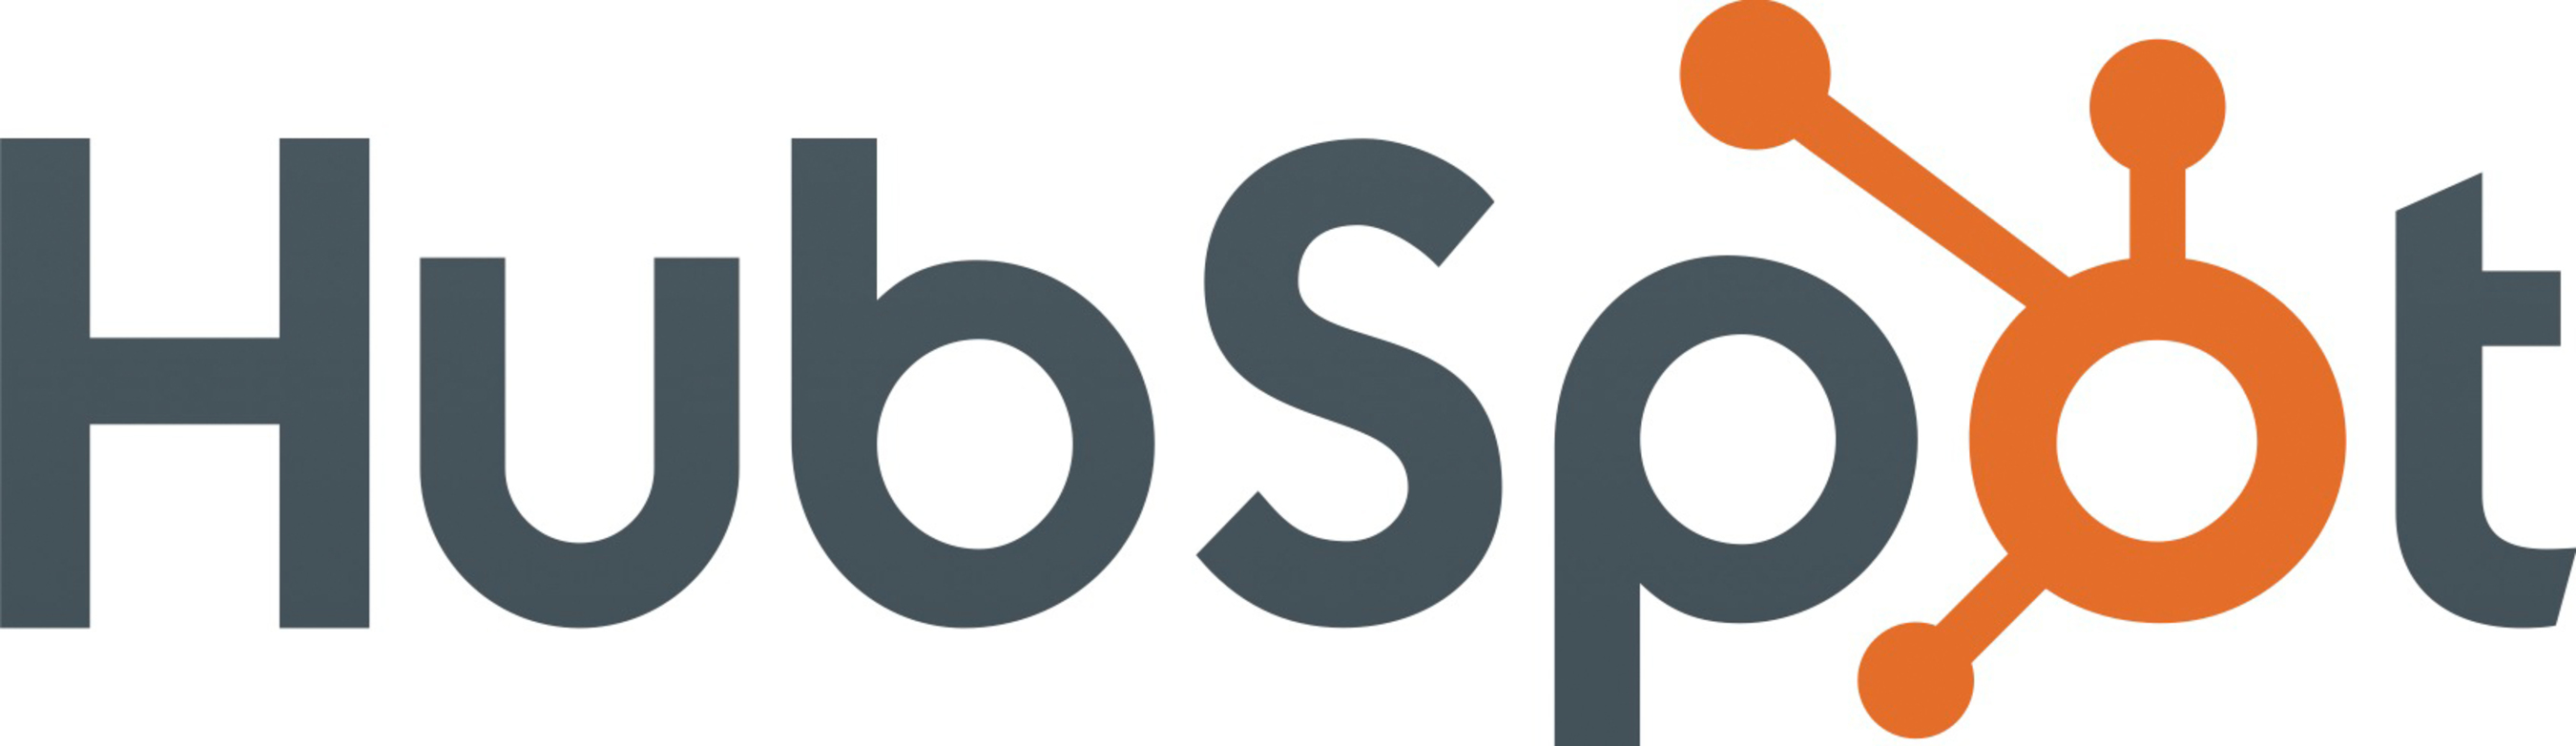 HubSpot, Inc. logo - www.hubspot.com.